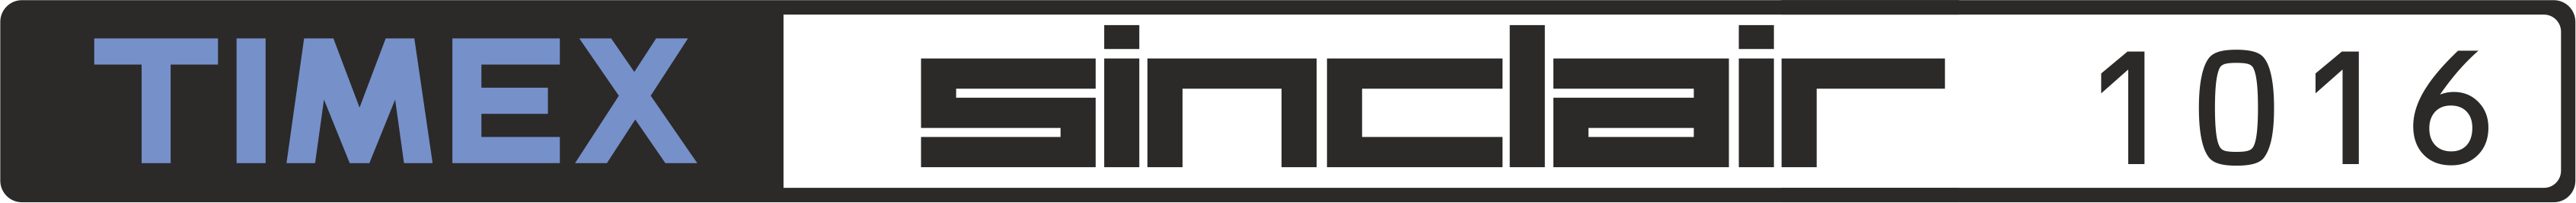 Timex Sinclair TS-1016: logo